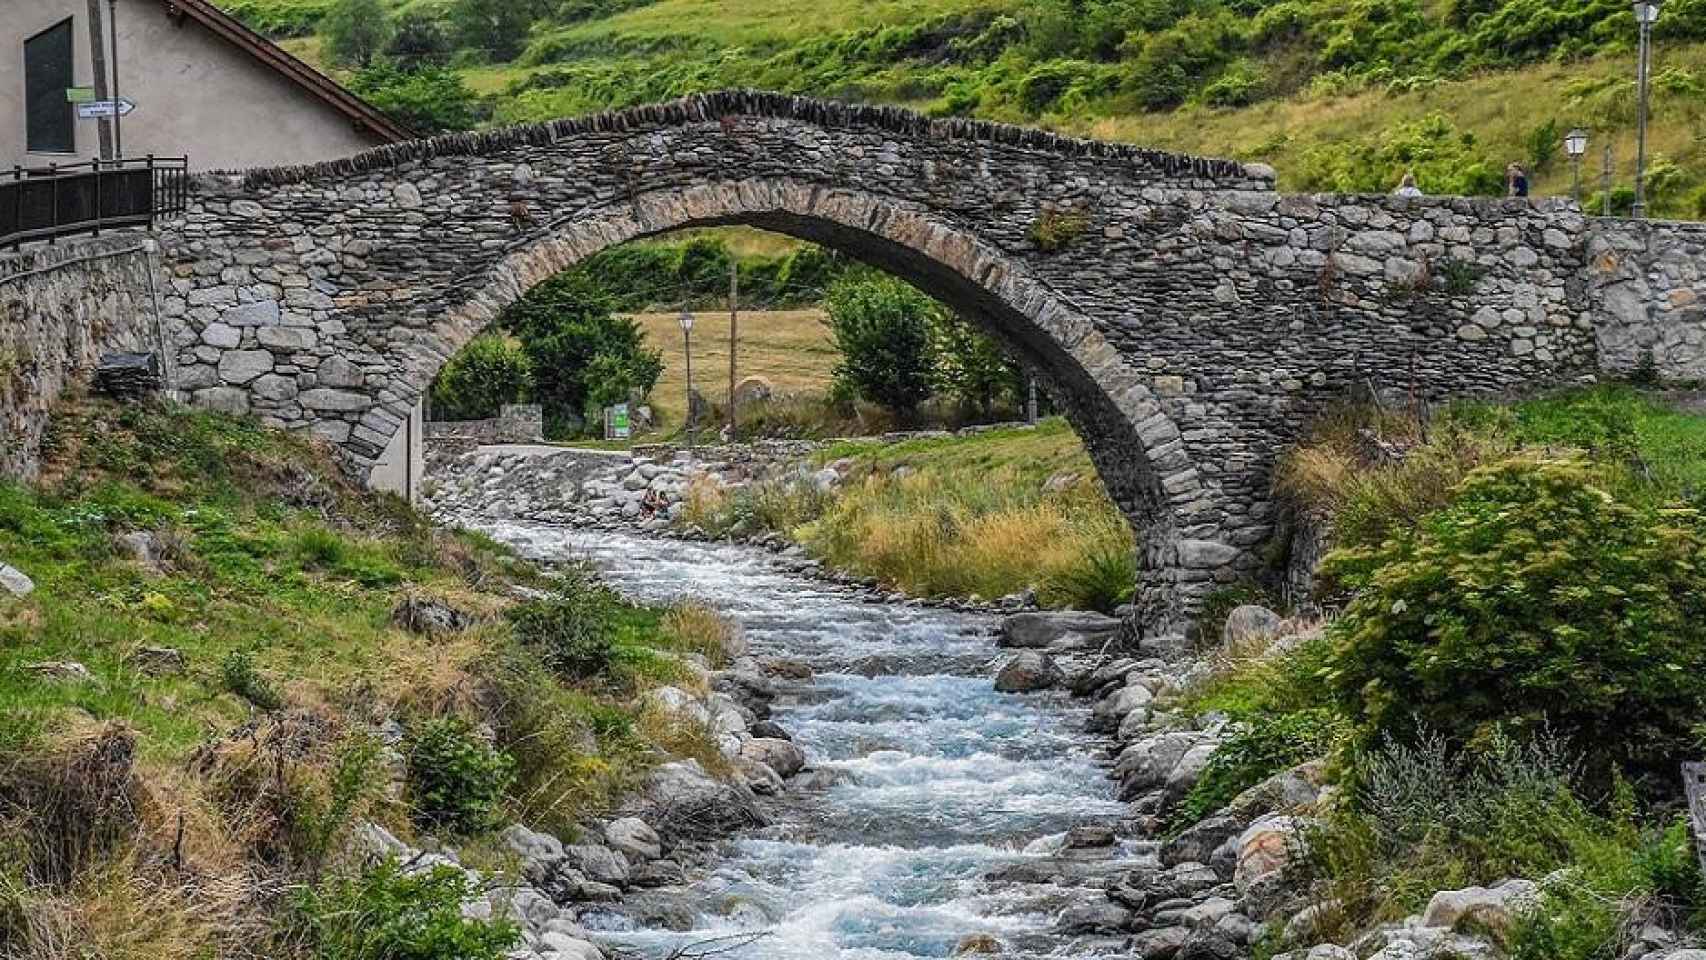 Un puente en una zona rural una de las posibles  7 maravillas rurales de España 2019 / PIXABAY